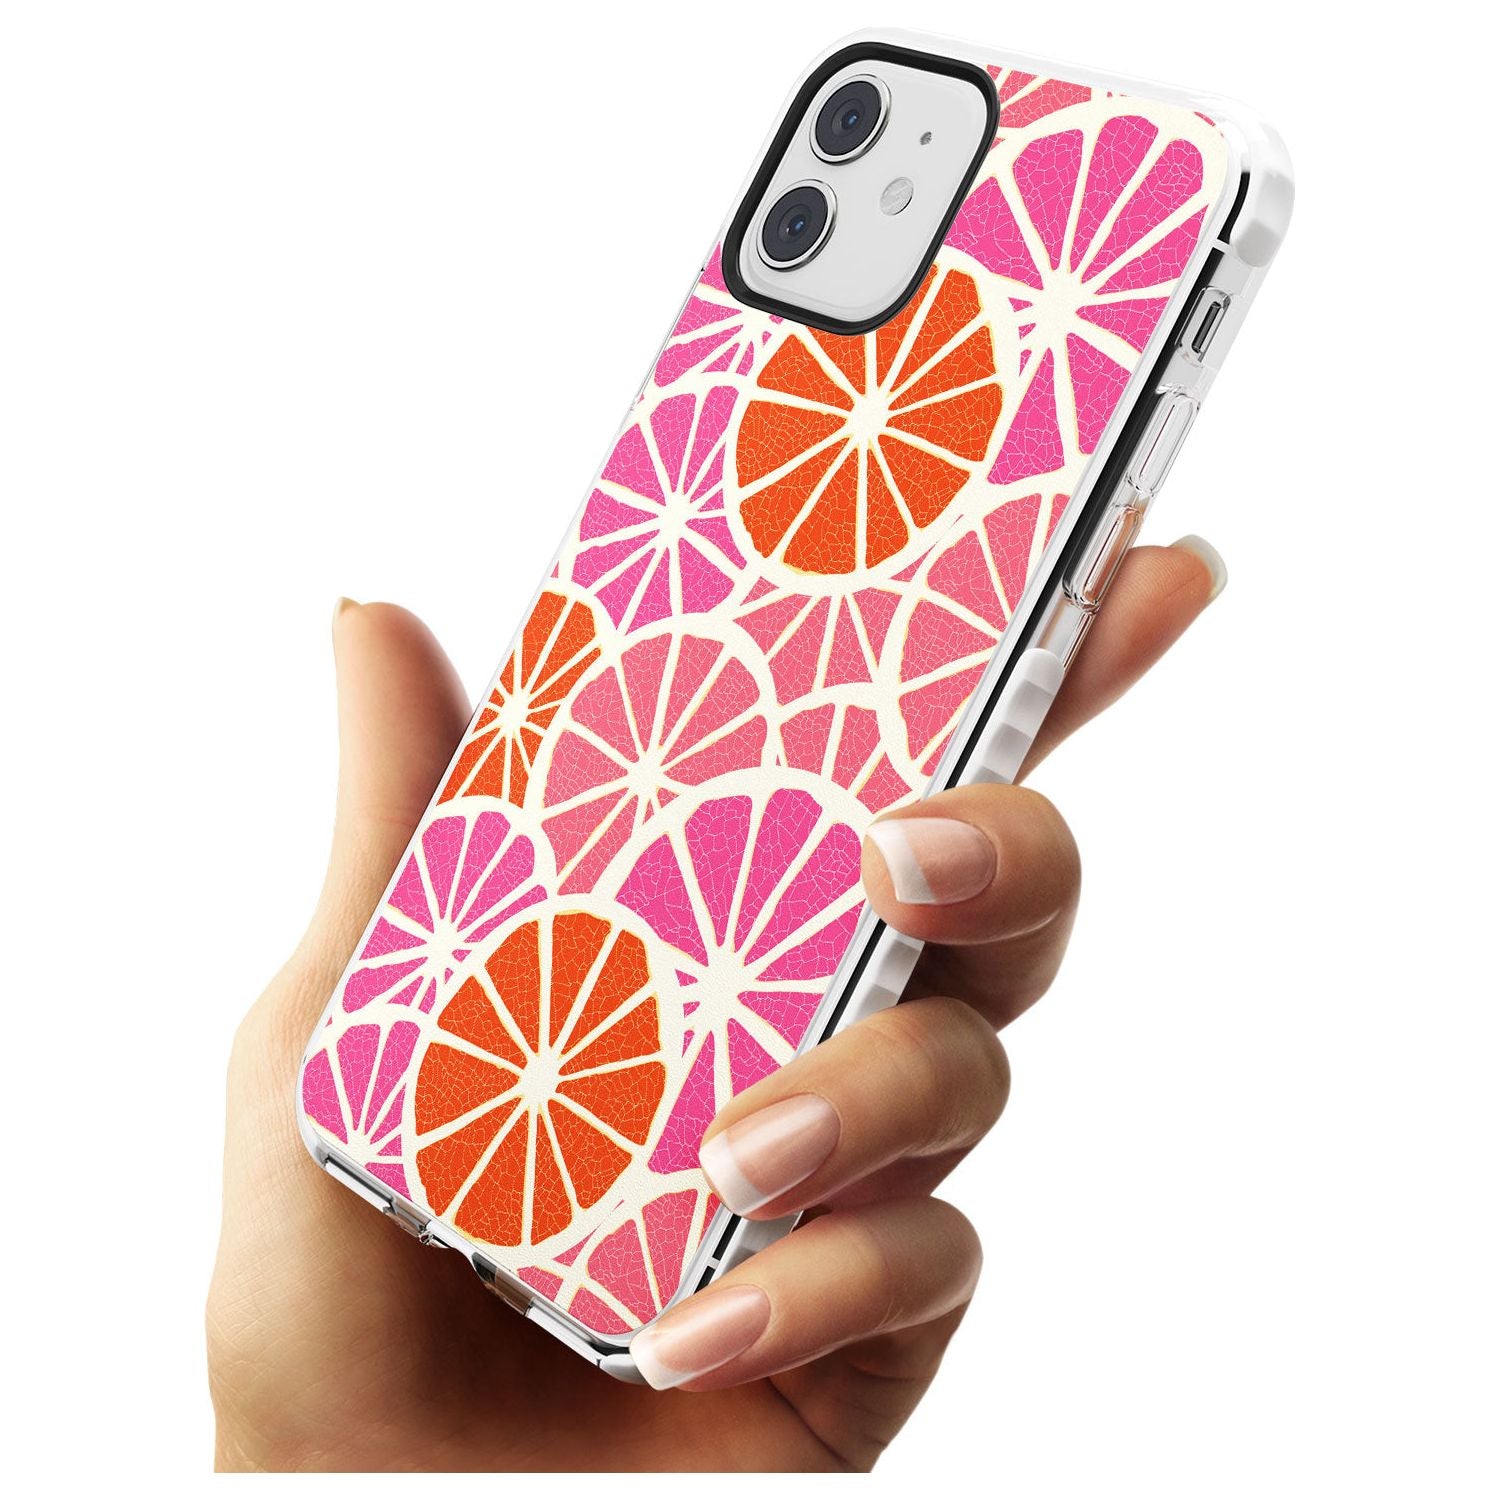 Citrus Slices Slim TPU Phone Case for iPhone 11